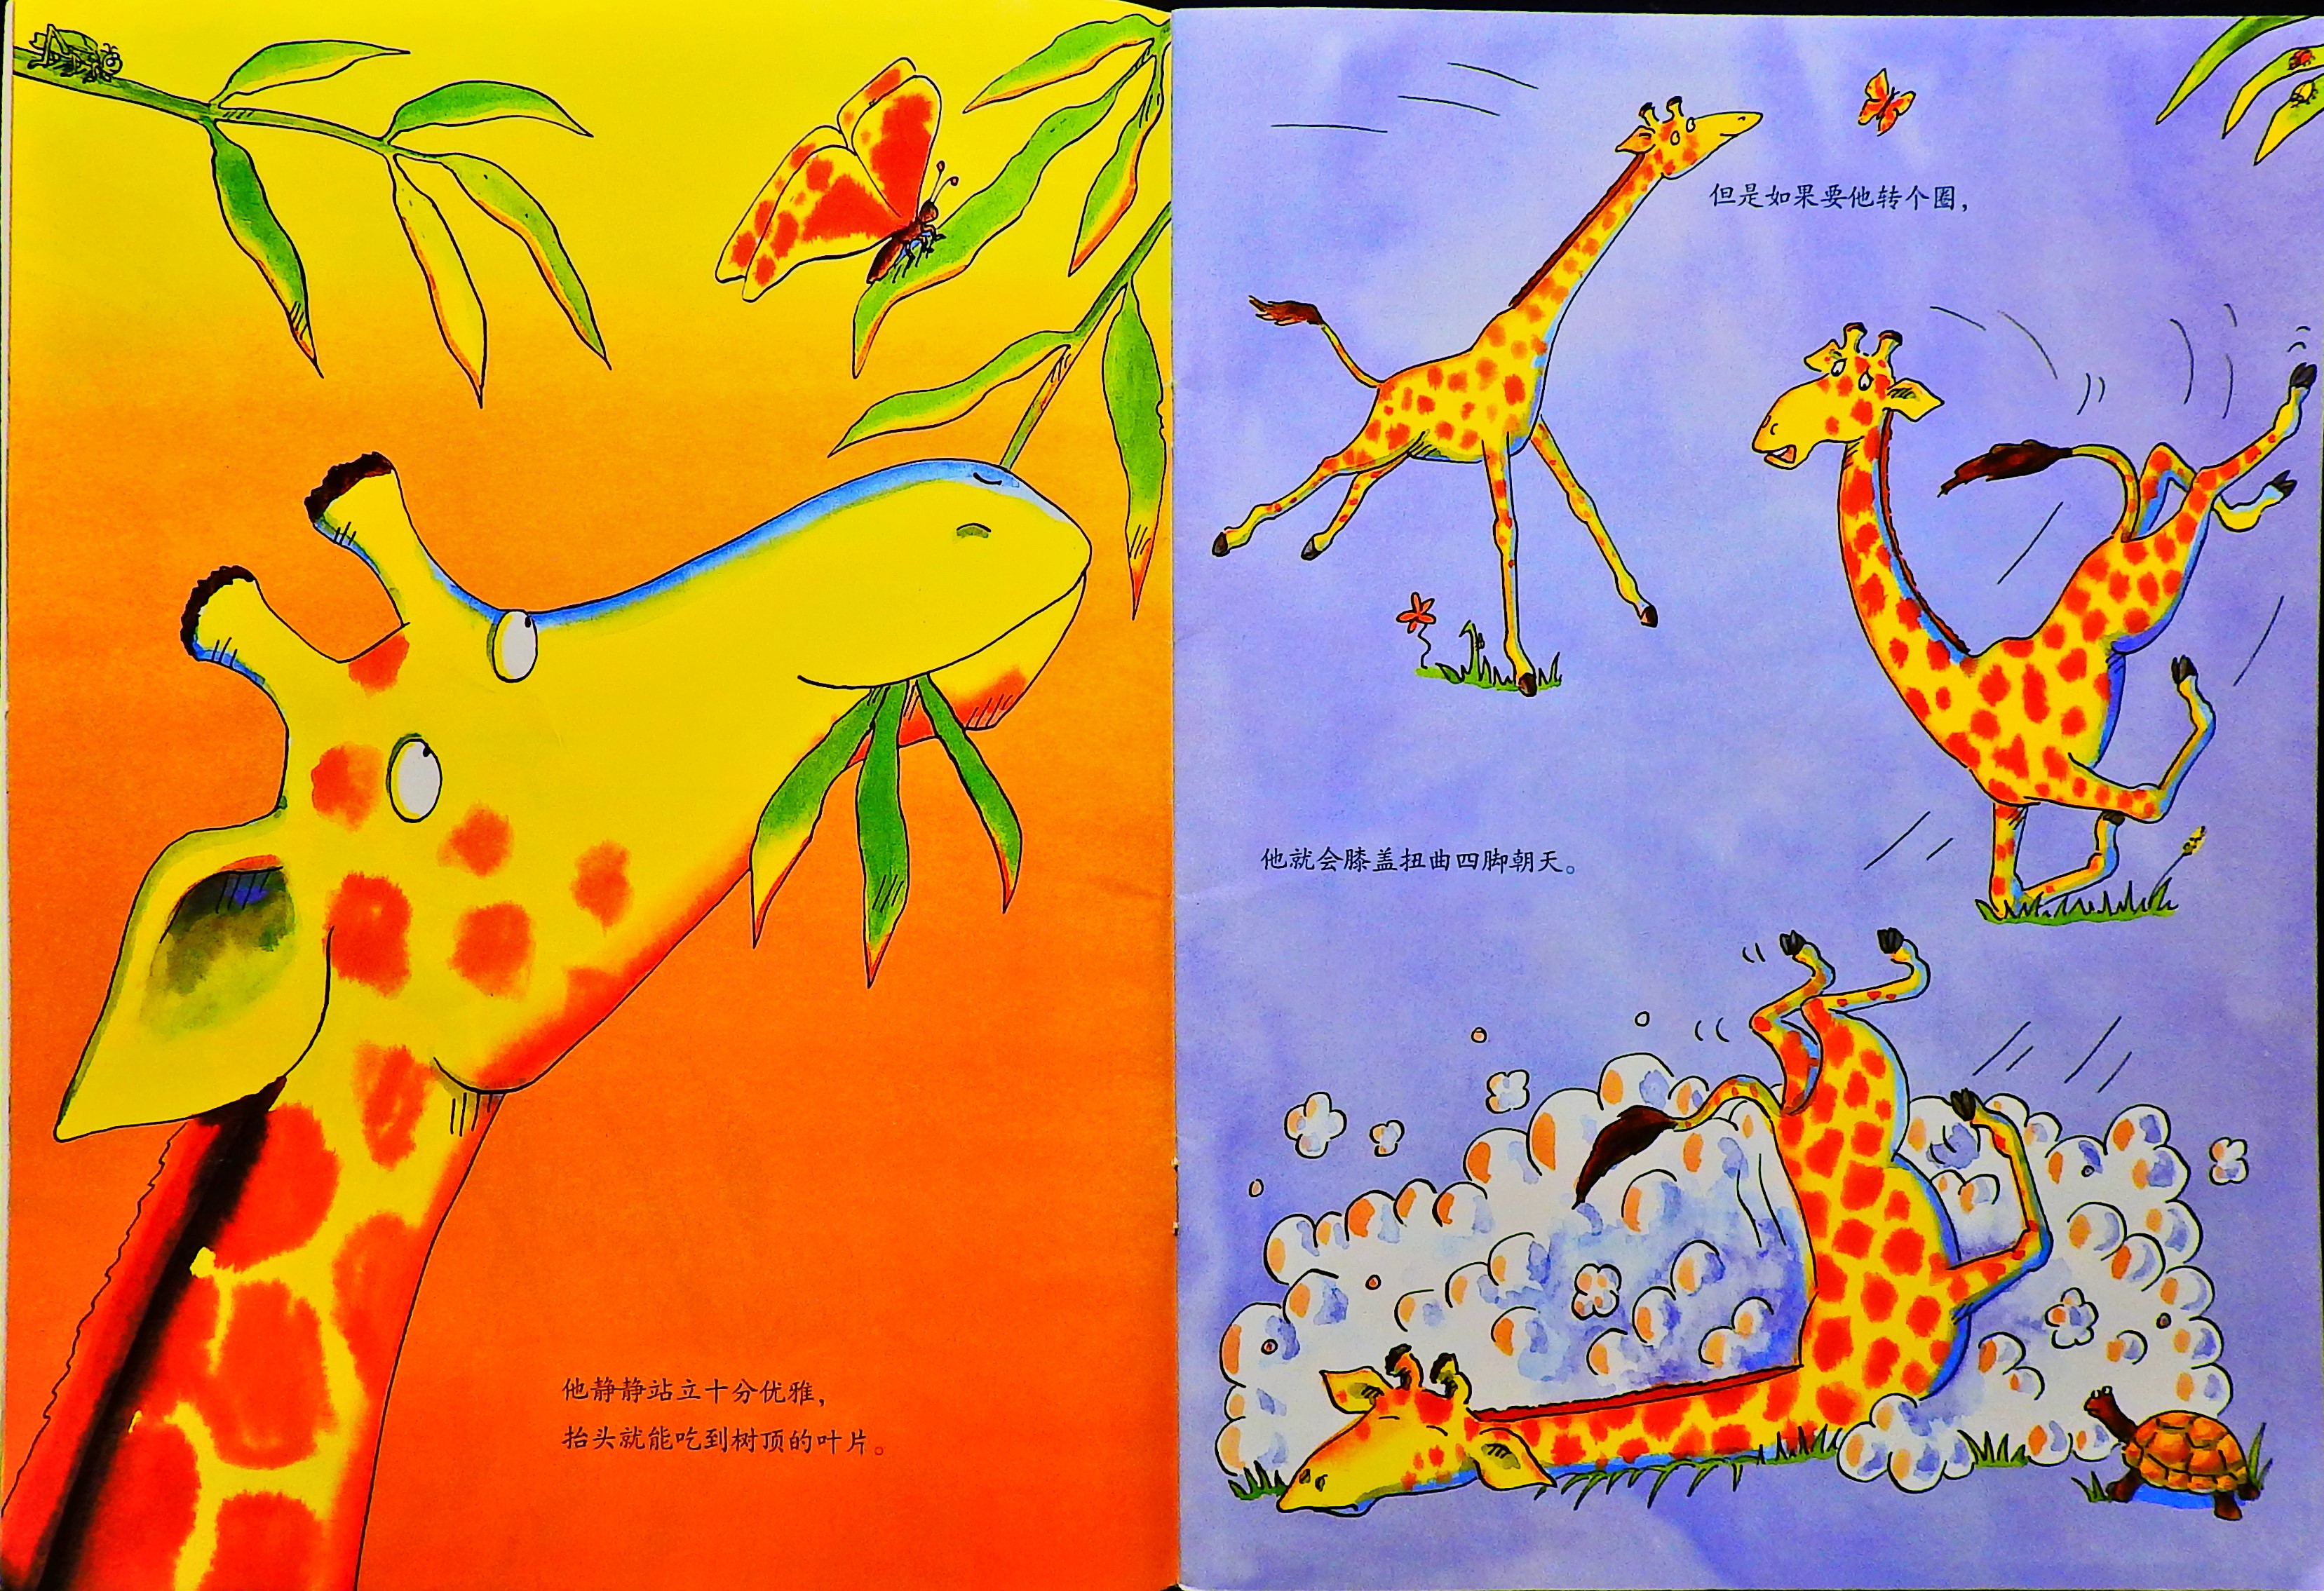 长颈鹿不会跳舞 (05),绘本,绘本故事,绘本阅读,故事书,童书,图画书,课外阅读